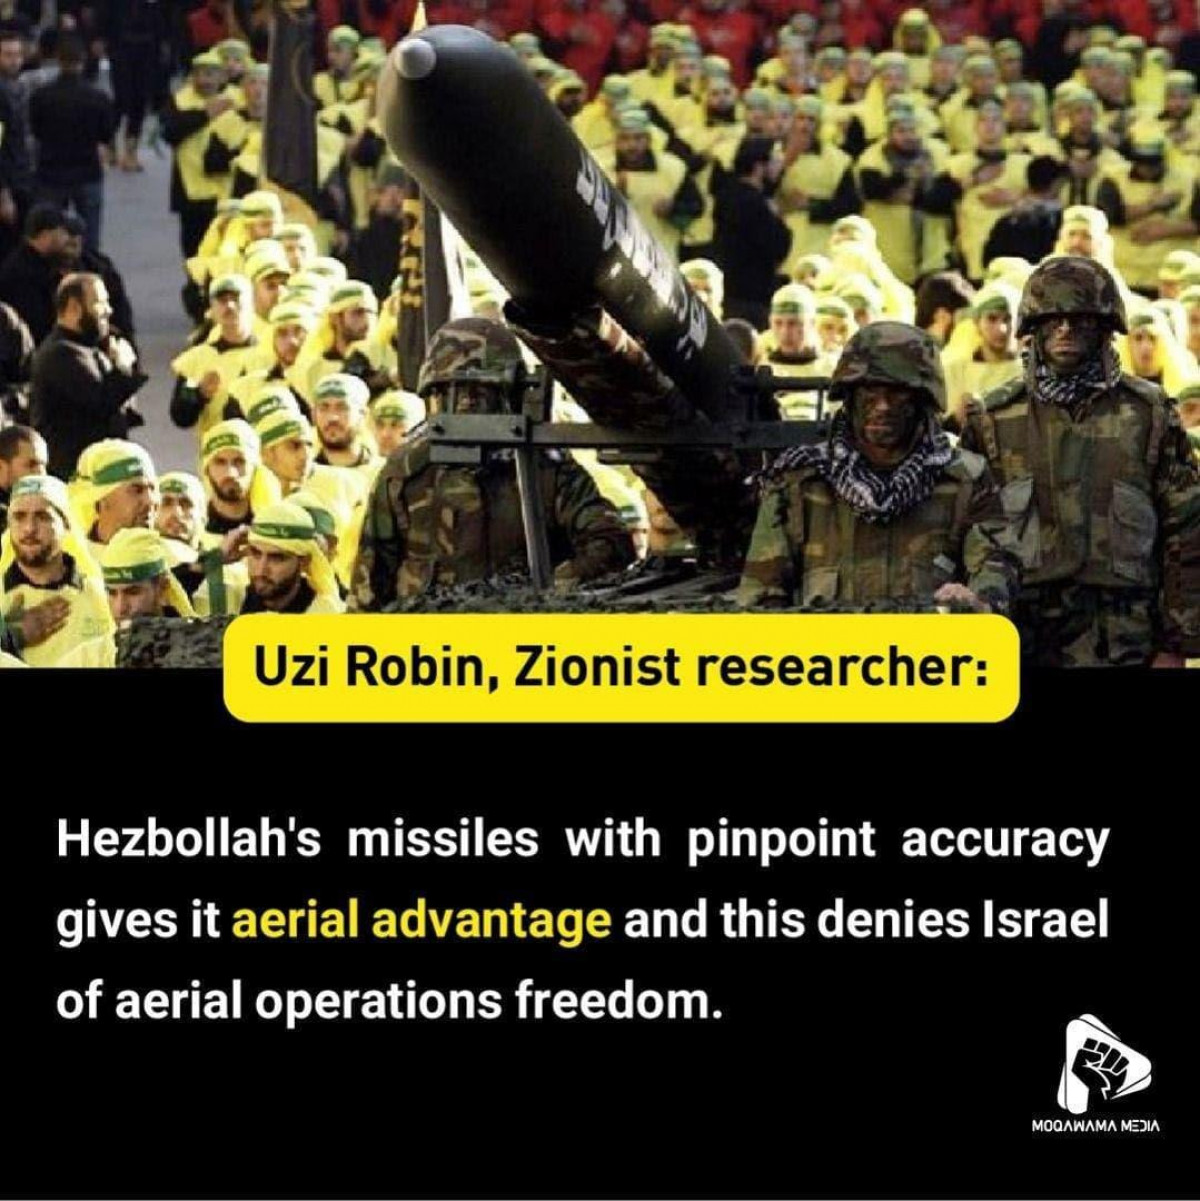 Uzi Robin, Zionist researcher: